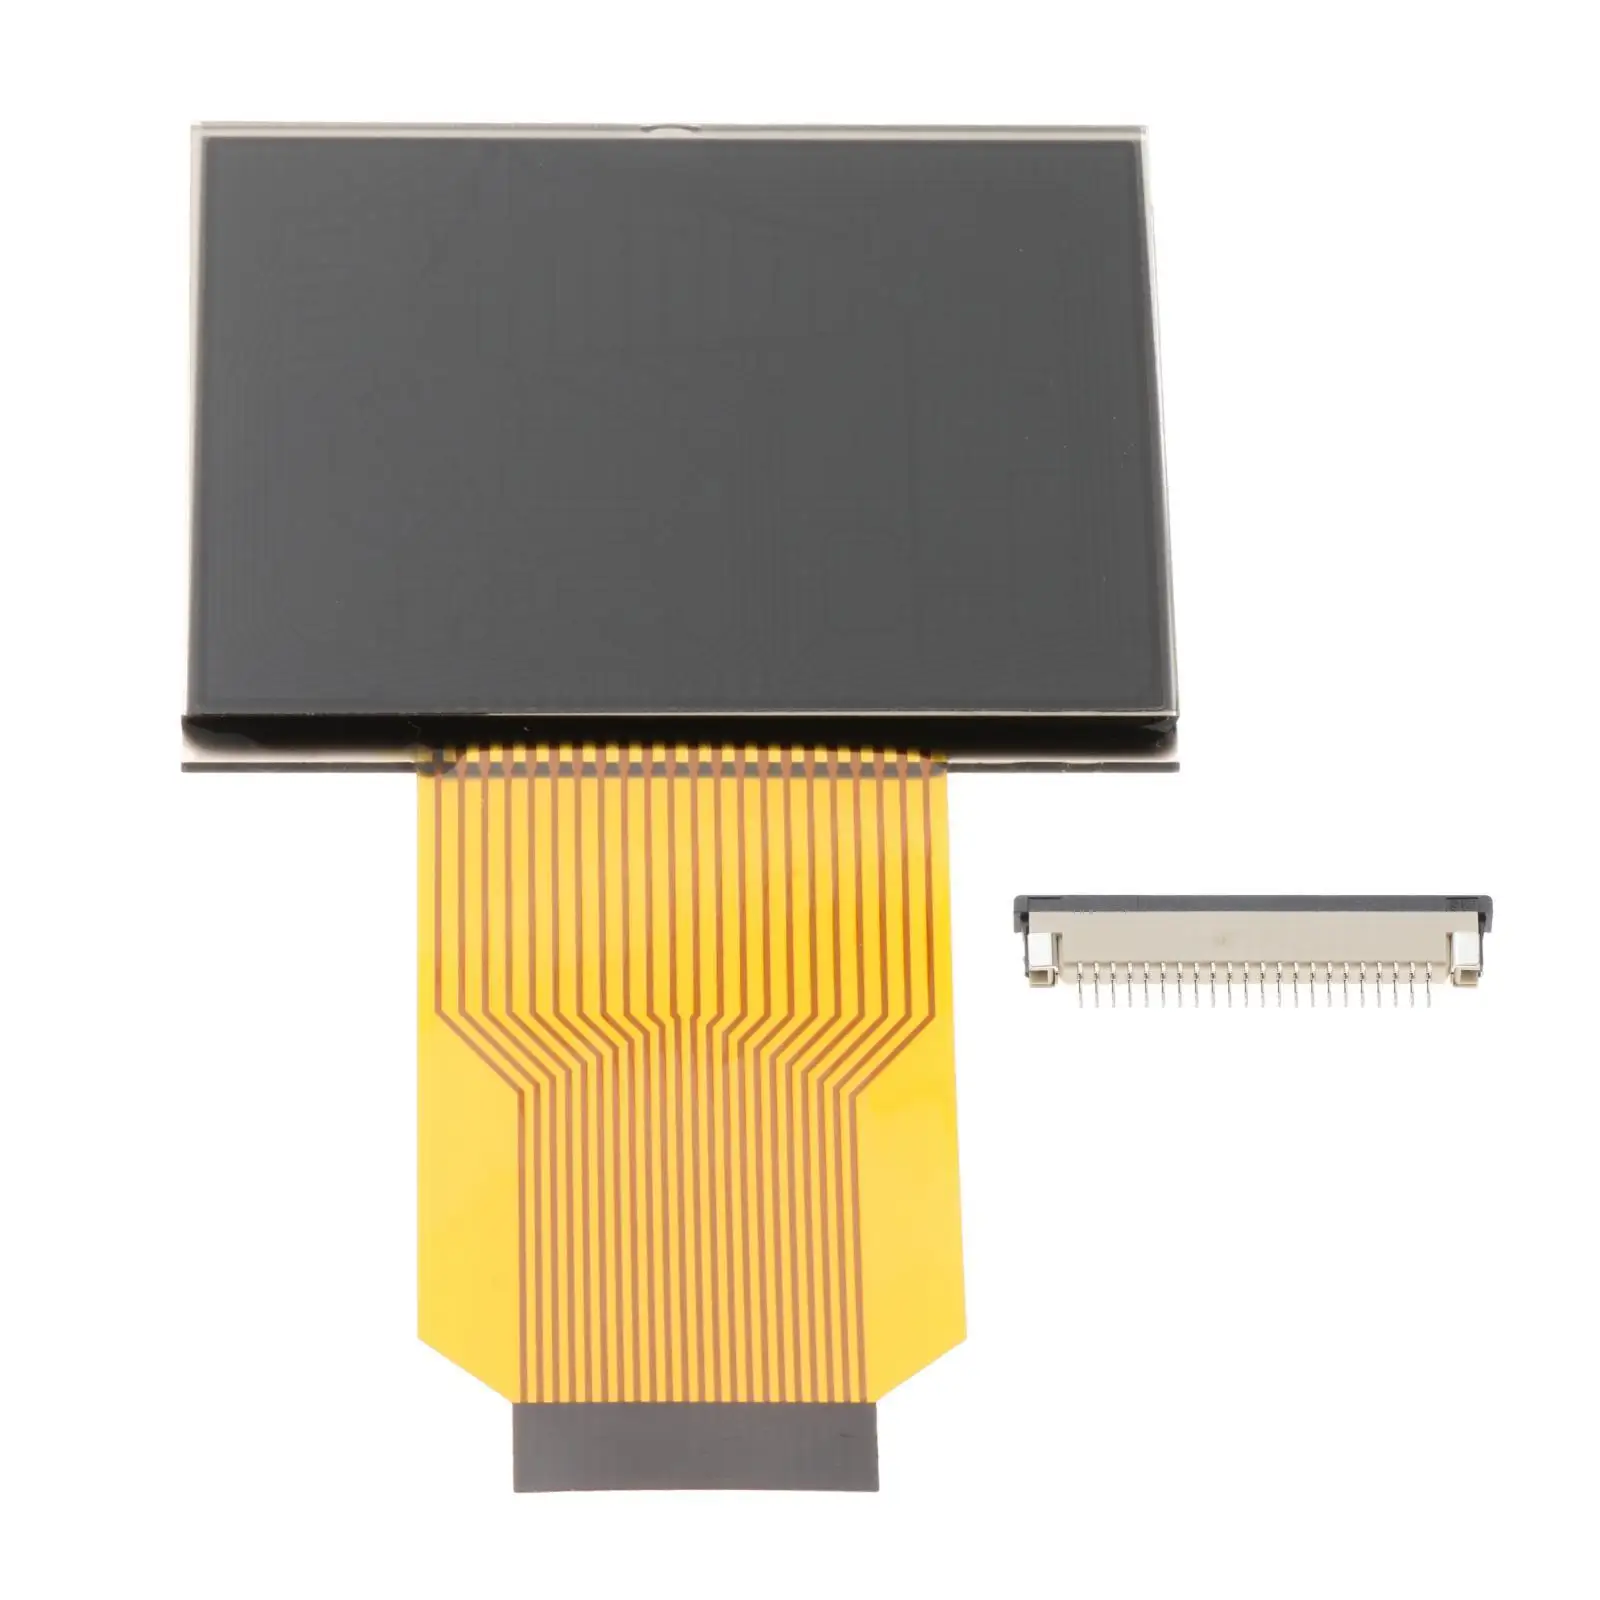 2x Pixel Repair LCD Screen LCD Display Instrument Pixel Repair Ribbon Cable for Saab 9-3 9-5